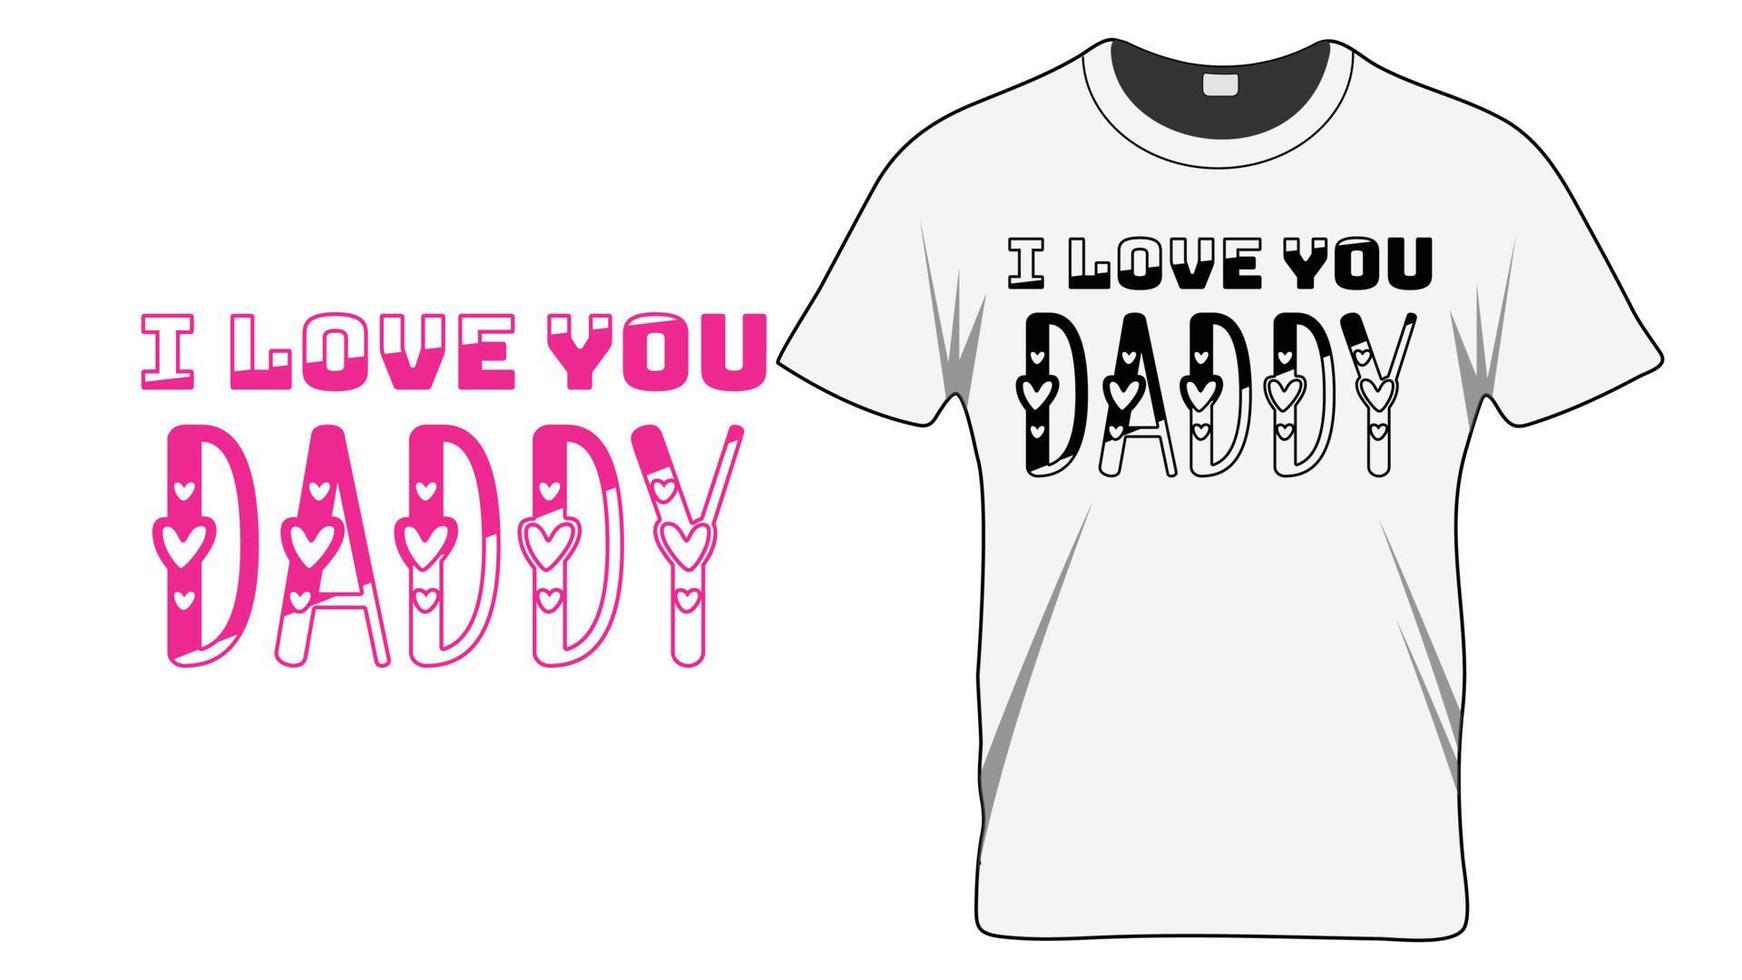 ich liebe dich papa - vatertagstypografie t-shirt designvorlage vektor